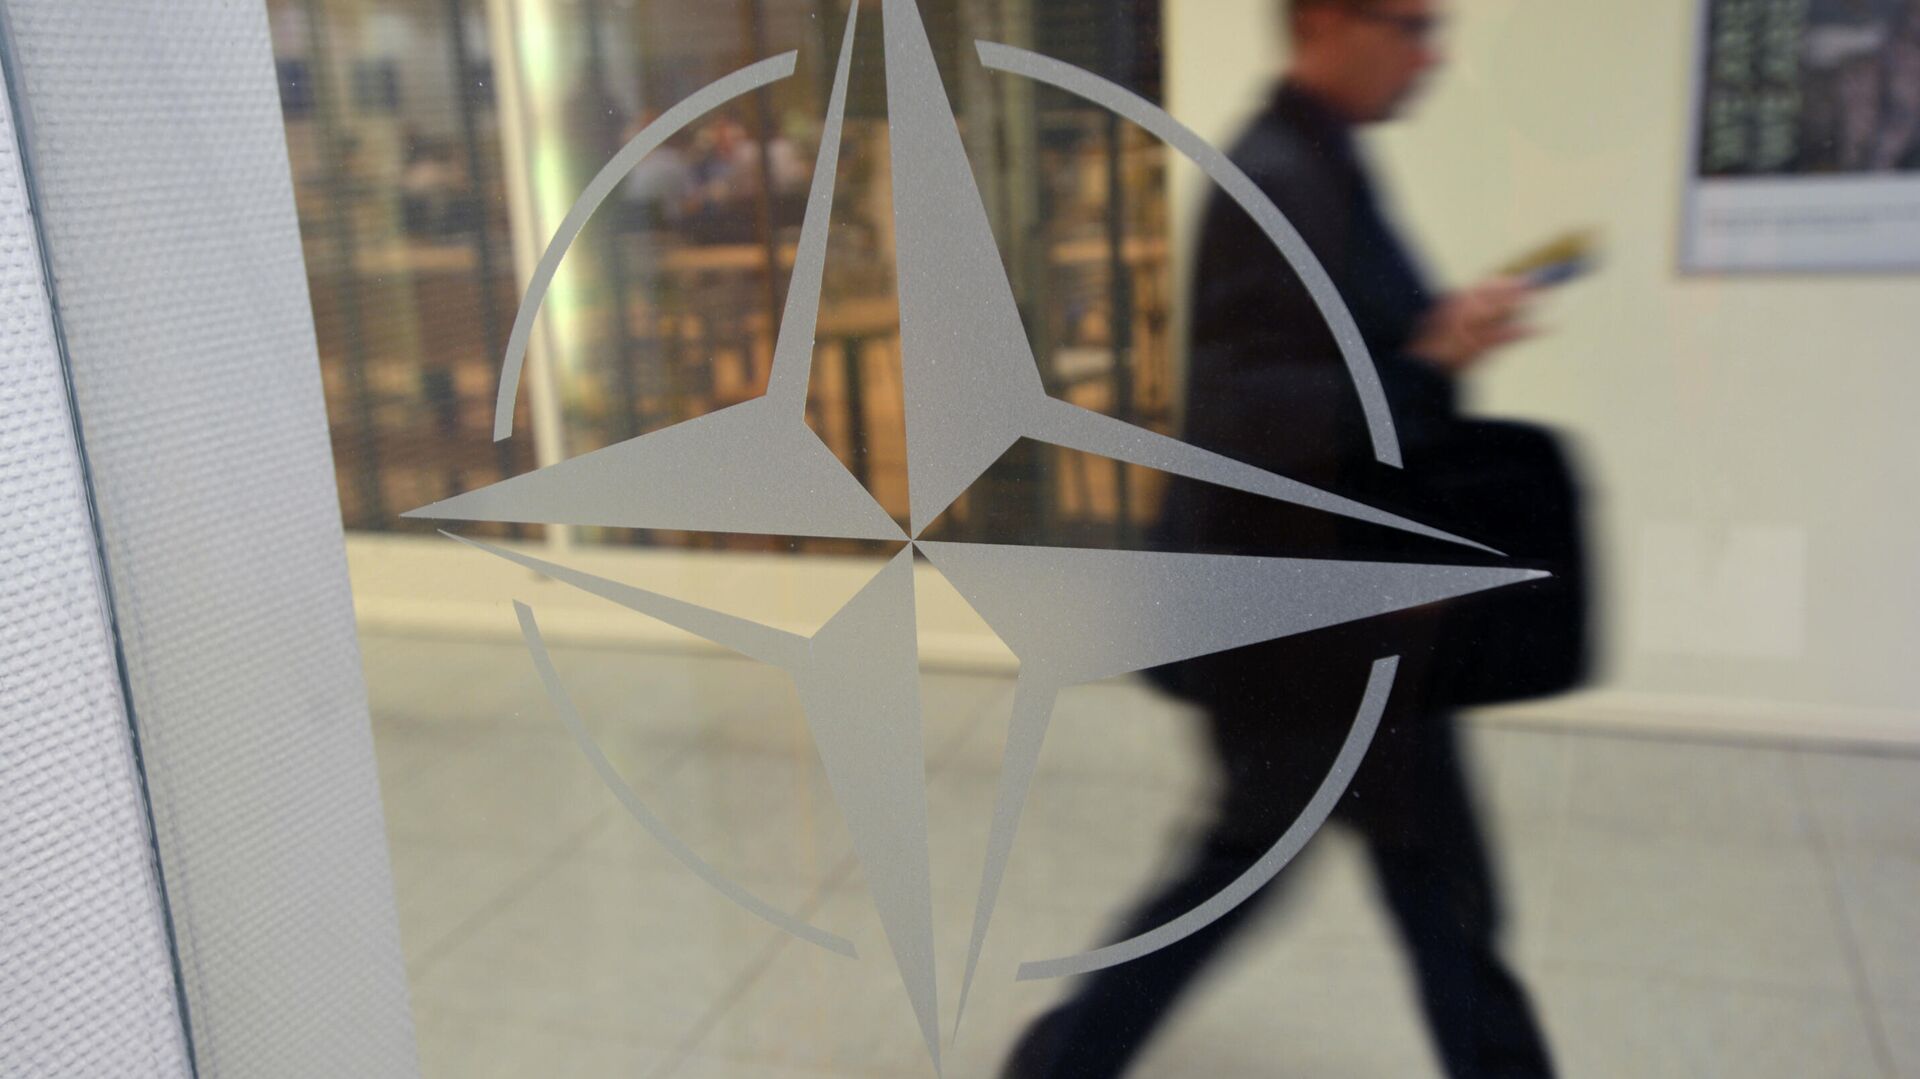 Эмблема организации в штаб-квартире НАТО в Брюсселе. - Sputnik Абхазия, 1920, 23.12.2021